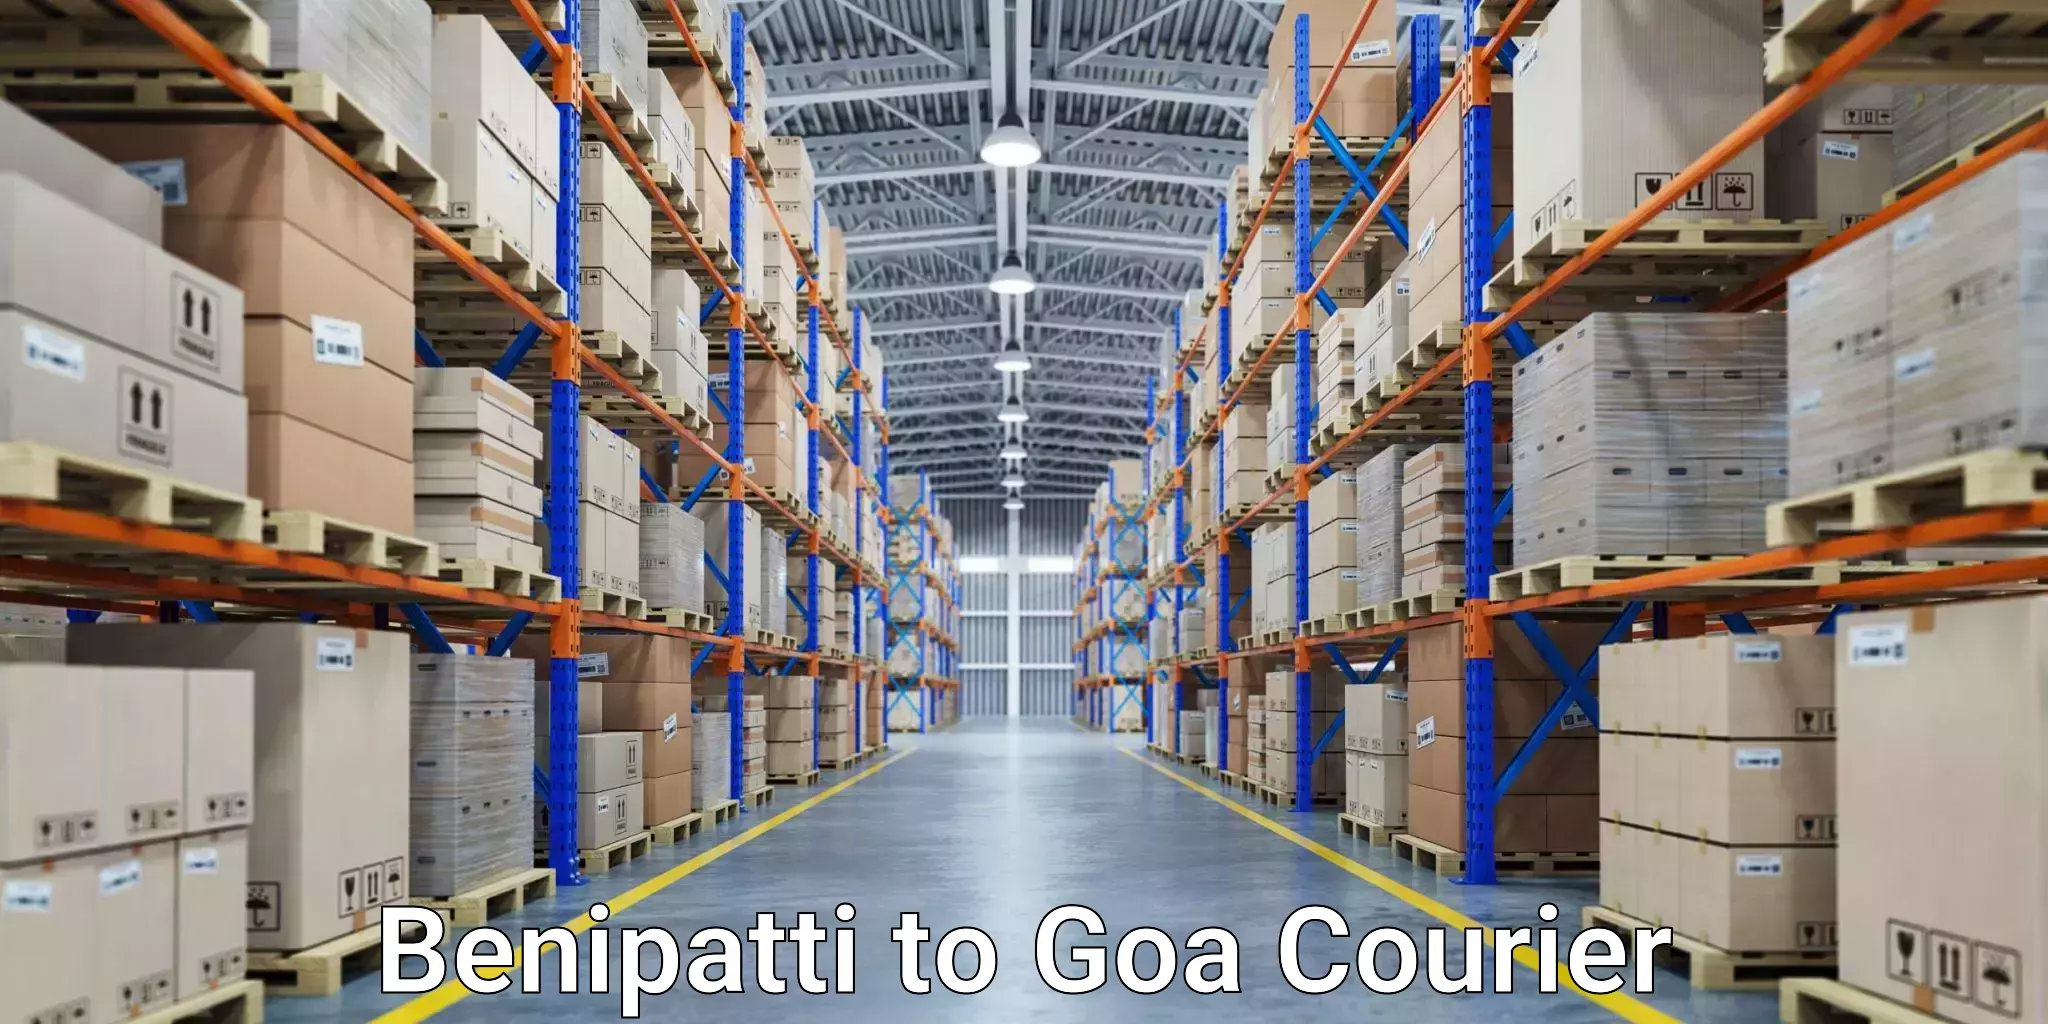 Express mail service Benipatti to IIT Goa